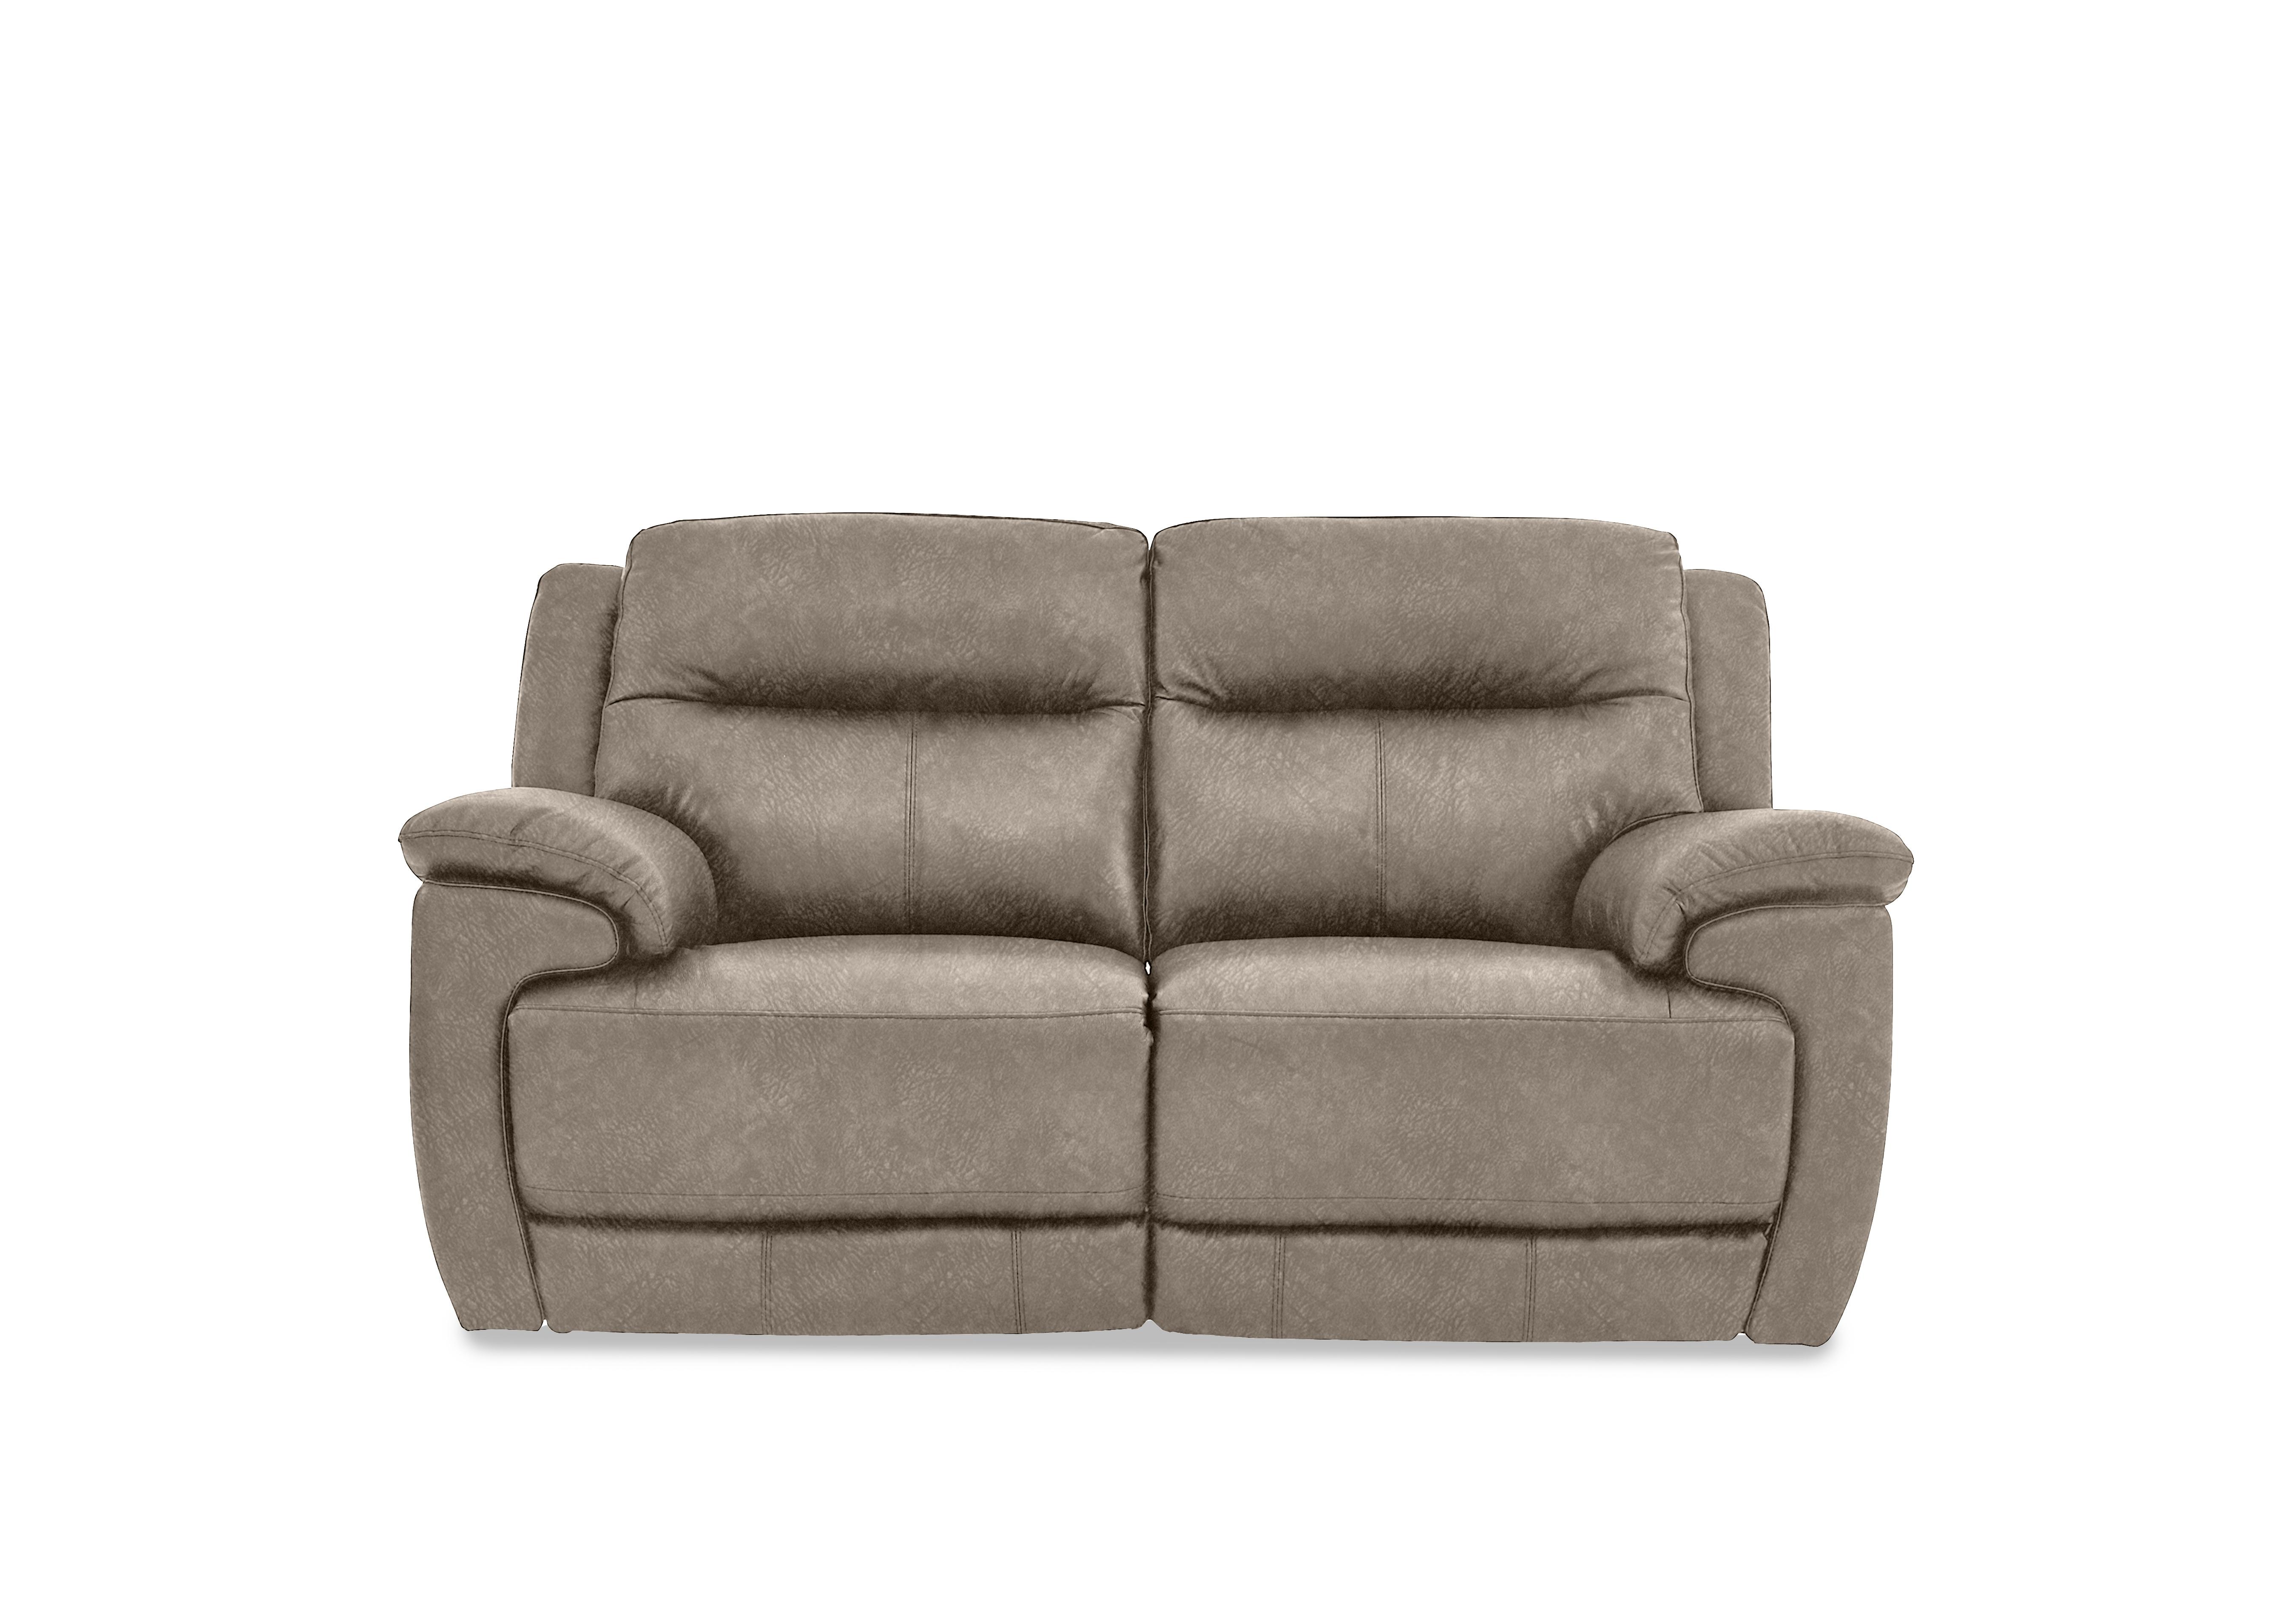 Touch 2 Seater Heavy Duty Fabric Sofa in Bfa-Bnn-R29 Fv1 Mink on Furniture Village